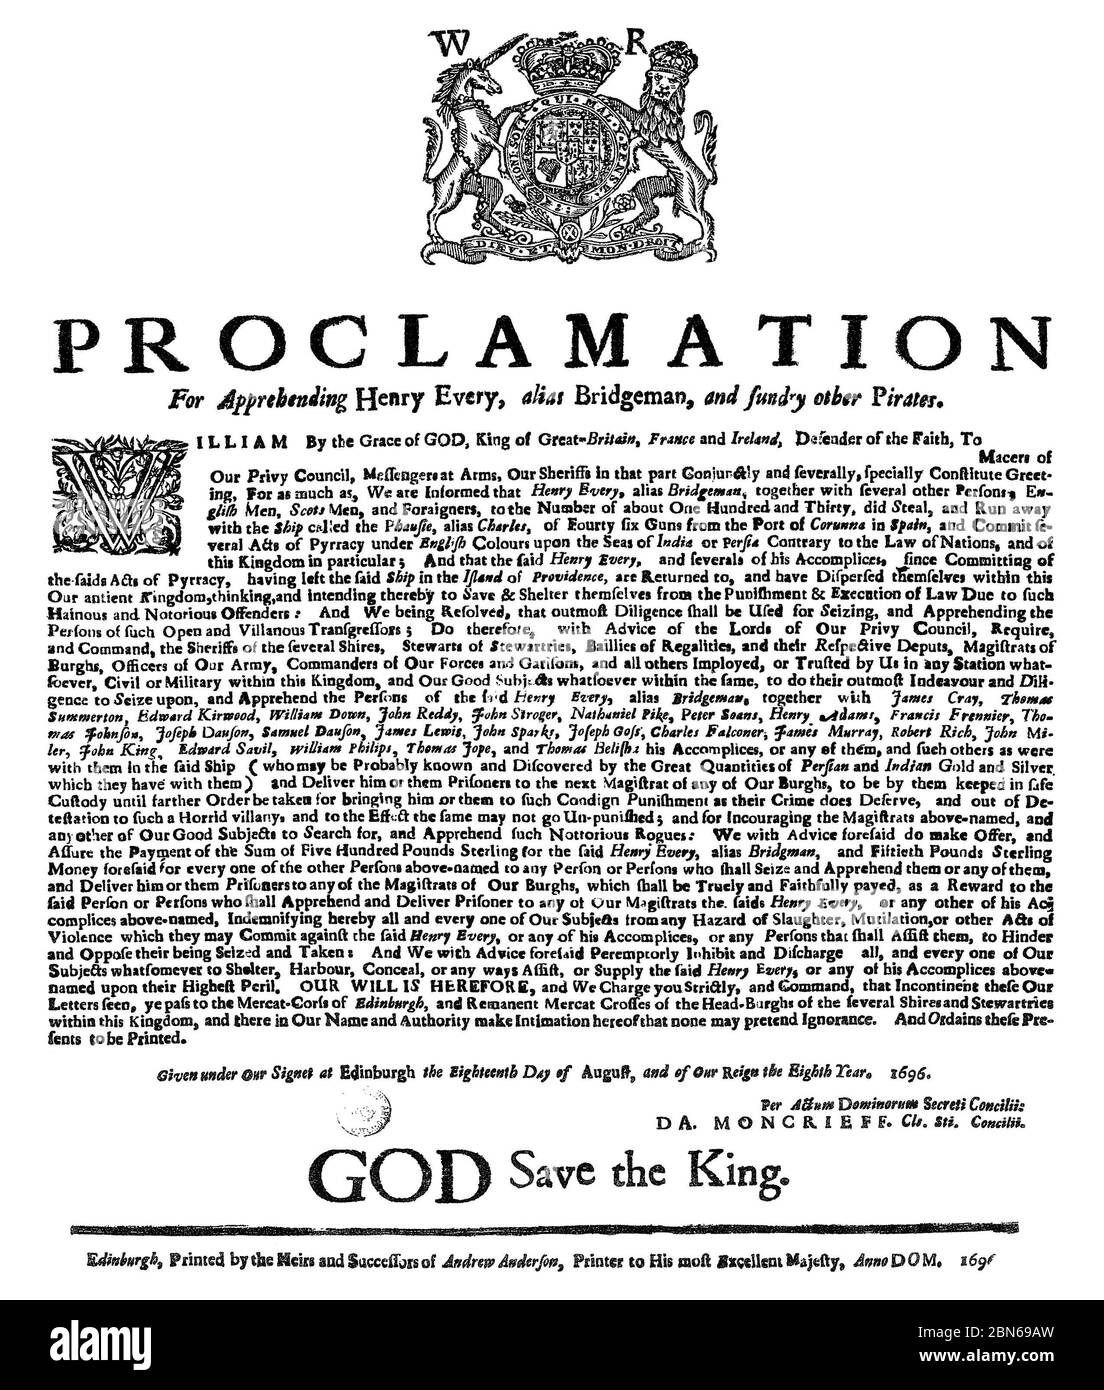 HENRY EVERY (1659-?) Englischer Pirat. Proklamation für seine Verhaftung mit einer Belohnung von £500, ausgestellt vom Privy Council of Scotland 18. August 1696. Stockfoto